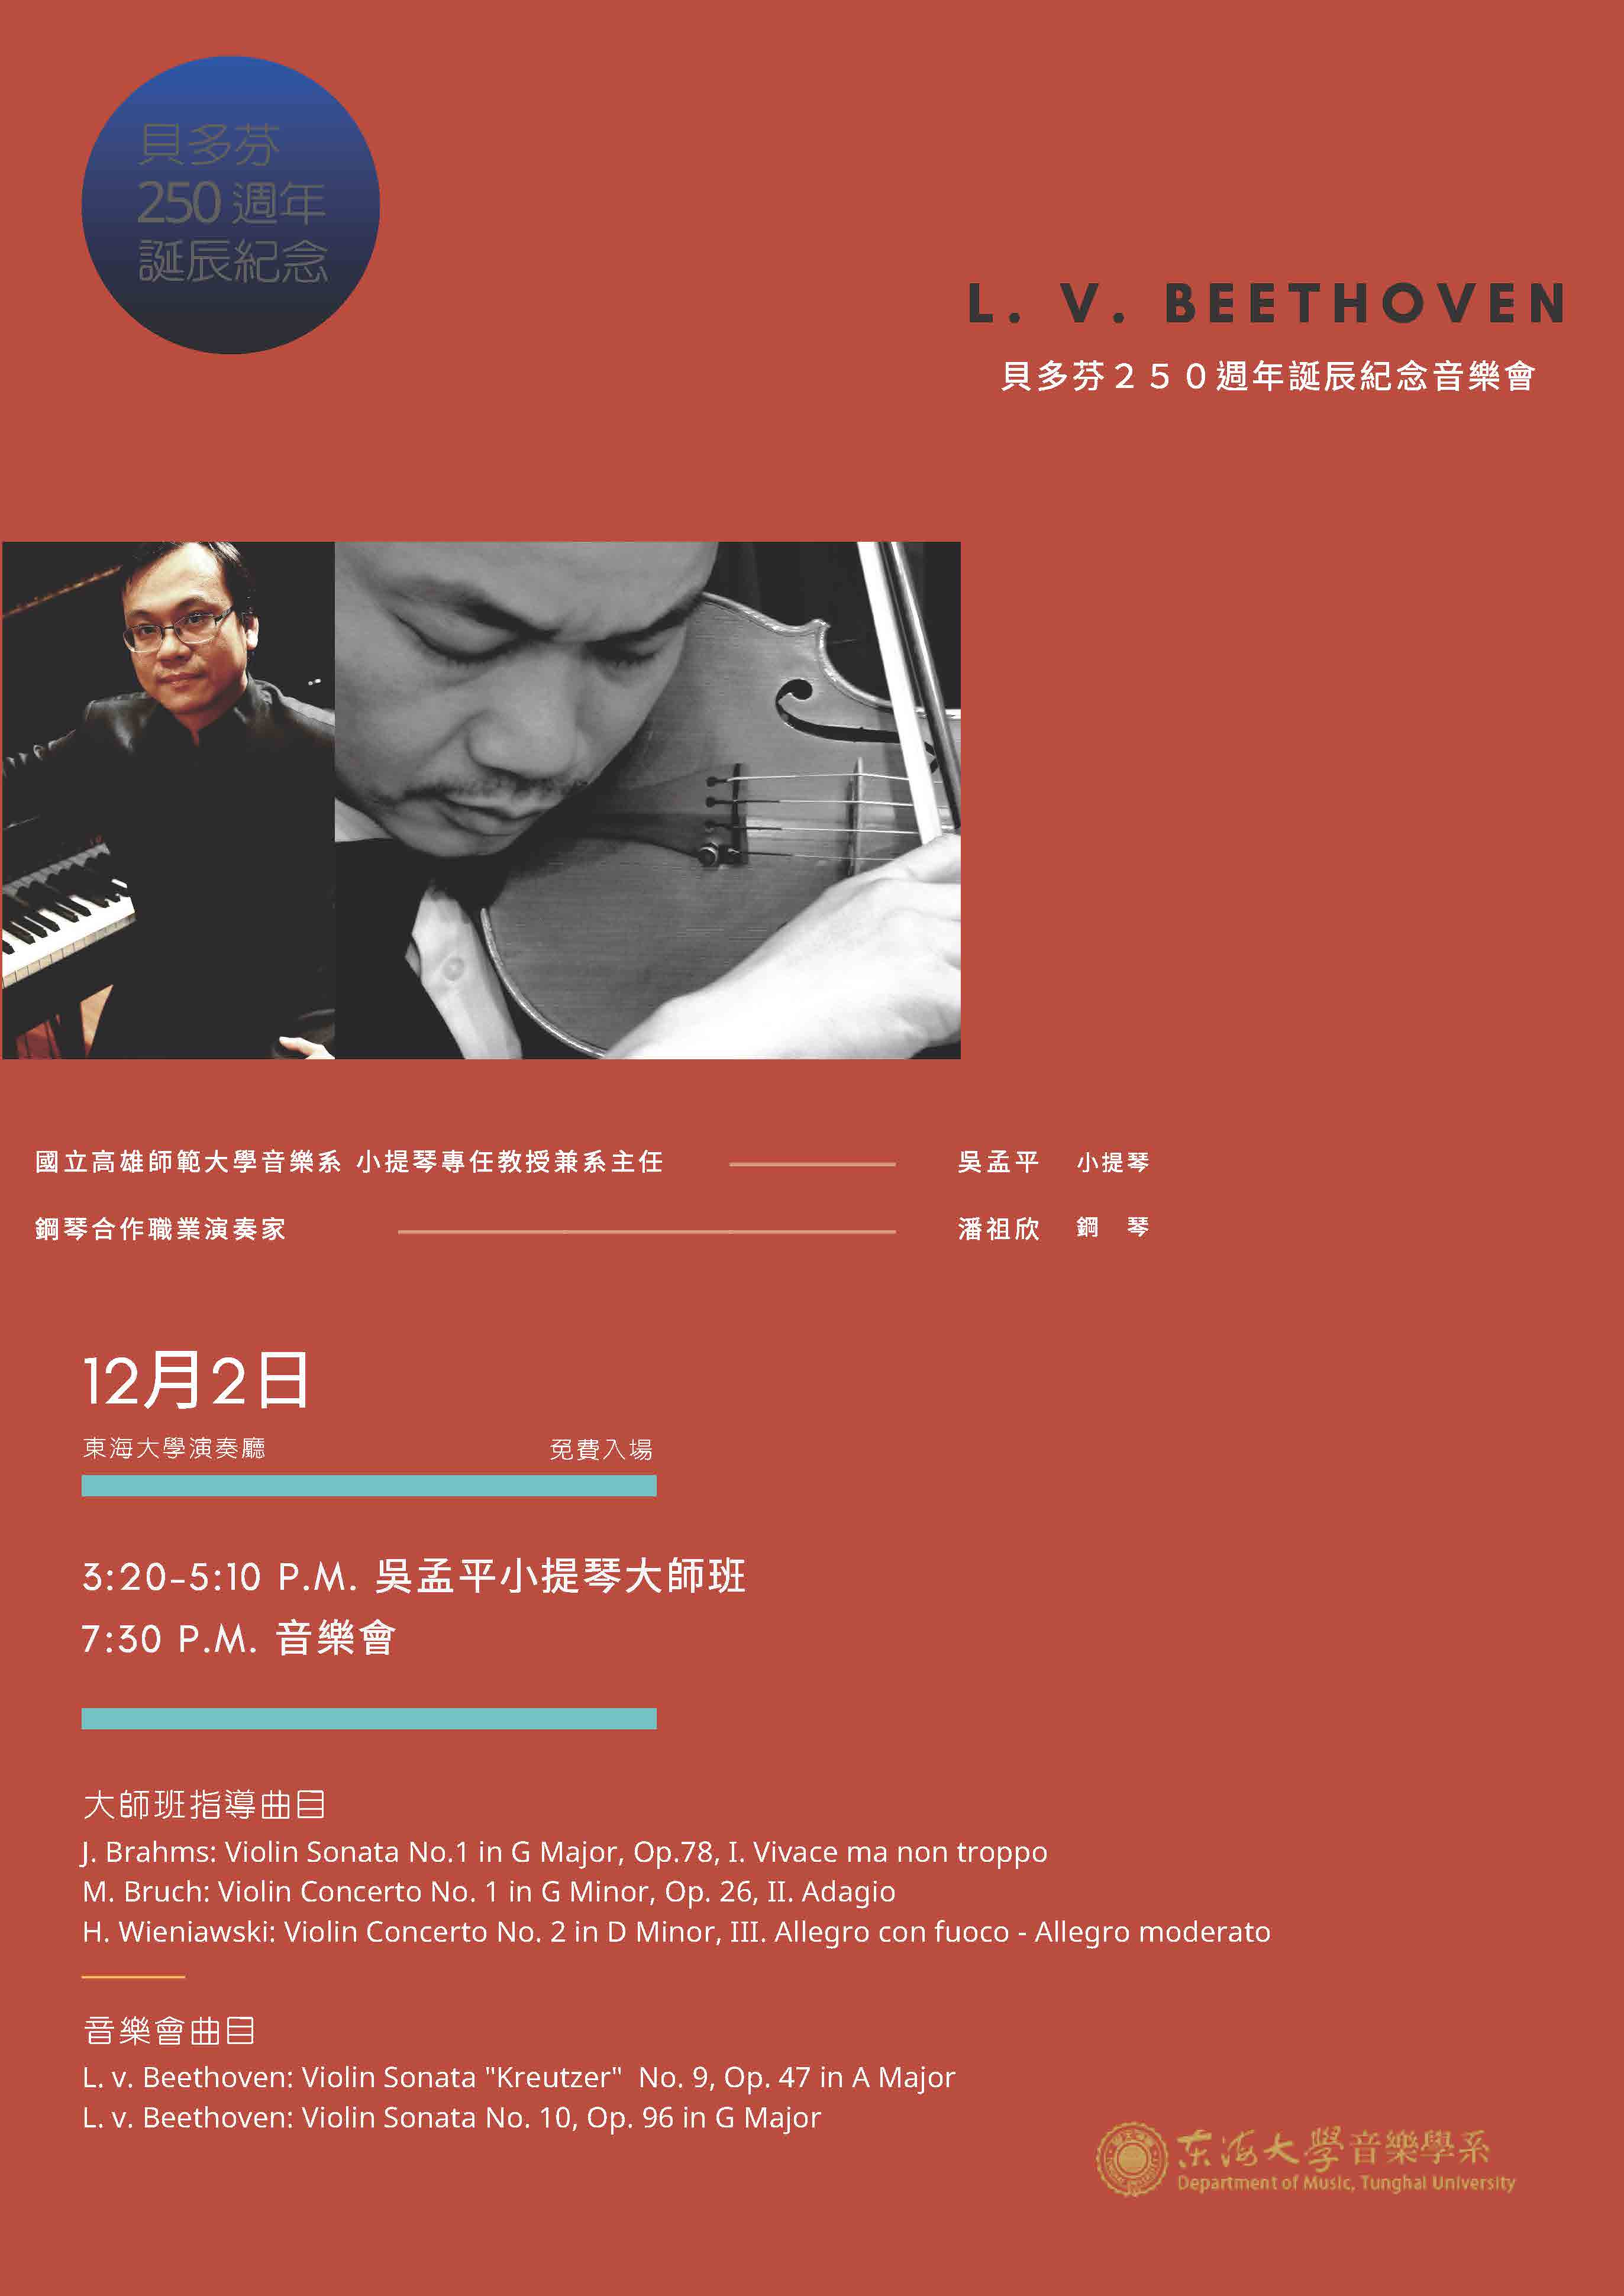 吳孟平小提琴大師班 暨 貝多芬誕辰250週年紀念音樂會